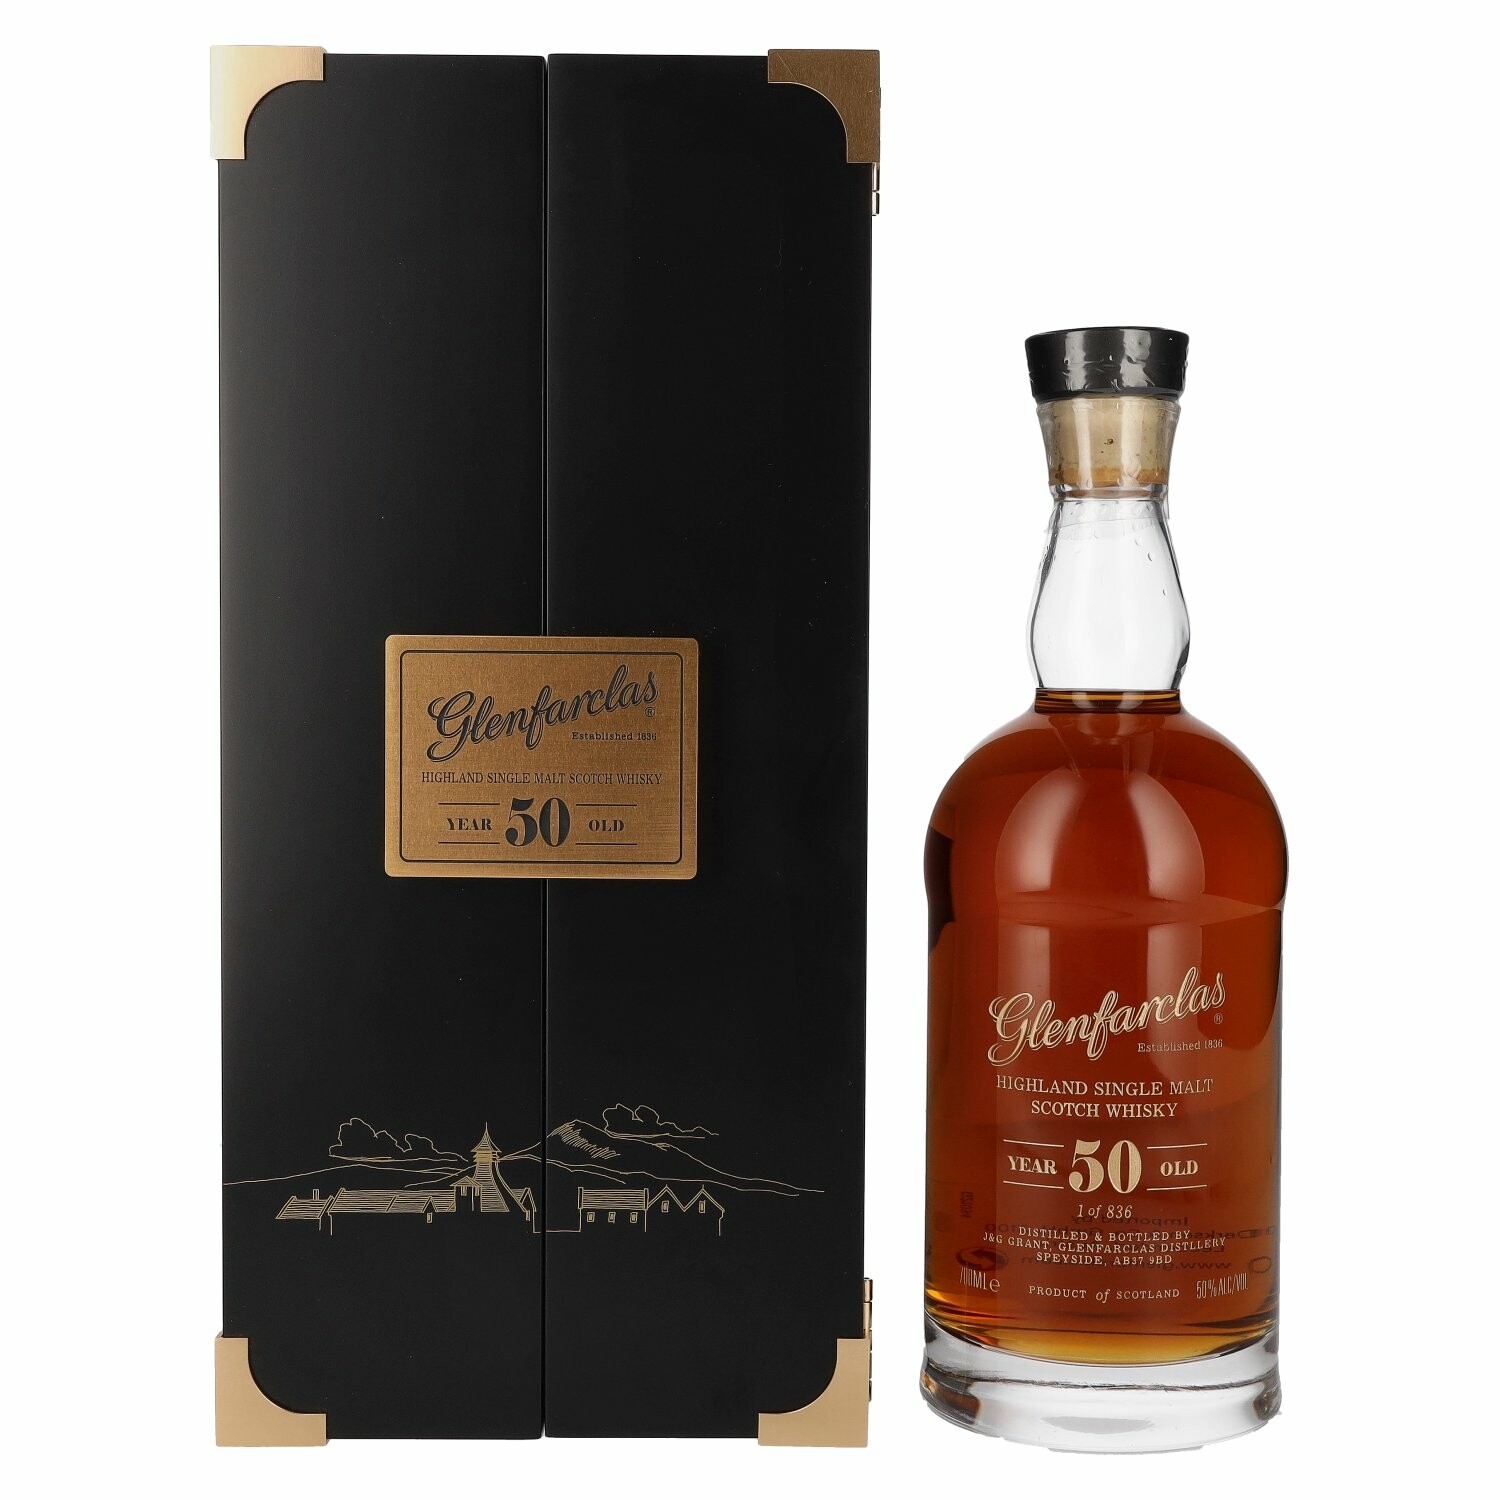 Glenfarclas 50 Years Old Highland Single Malt Scotch Whisky 50% Vol. 0,7l in Giftbox